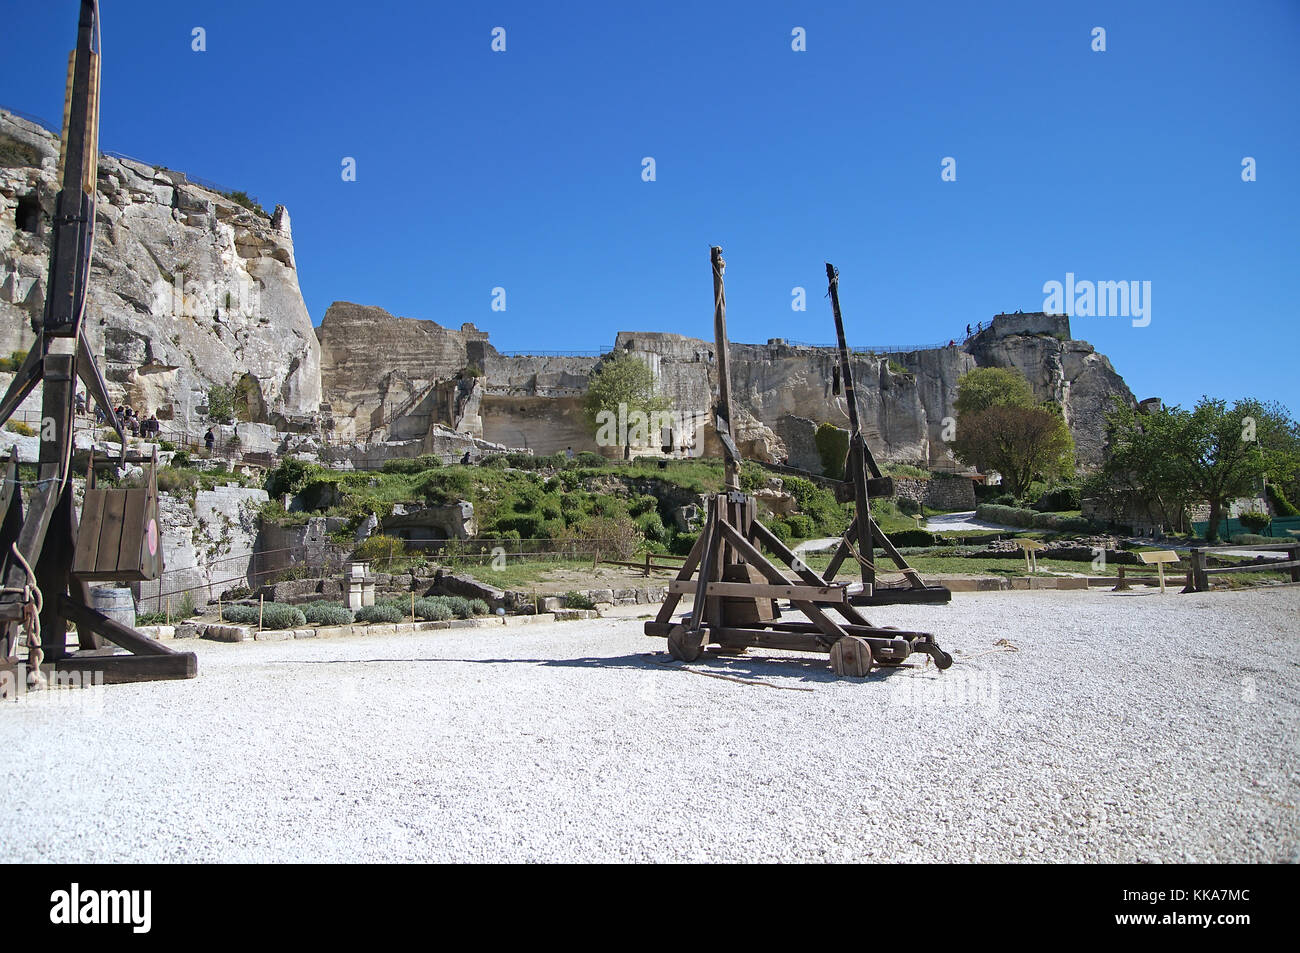 Middle age Trebuchet used as medieval siege engine against the castle Les Baux de Provence Stock Photo